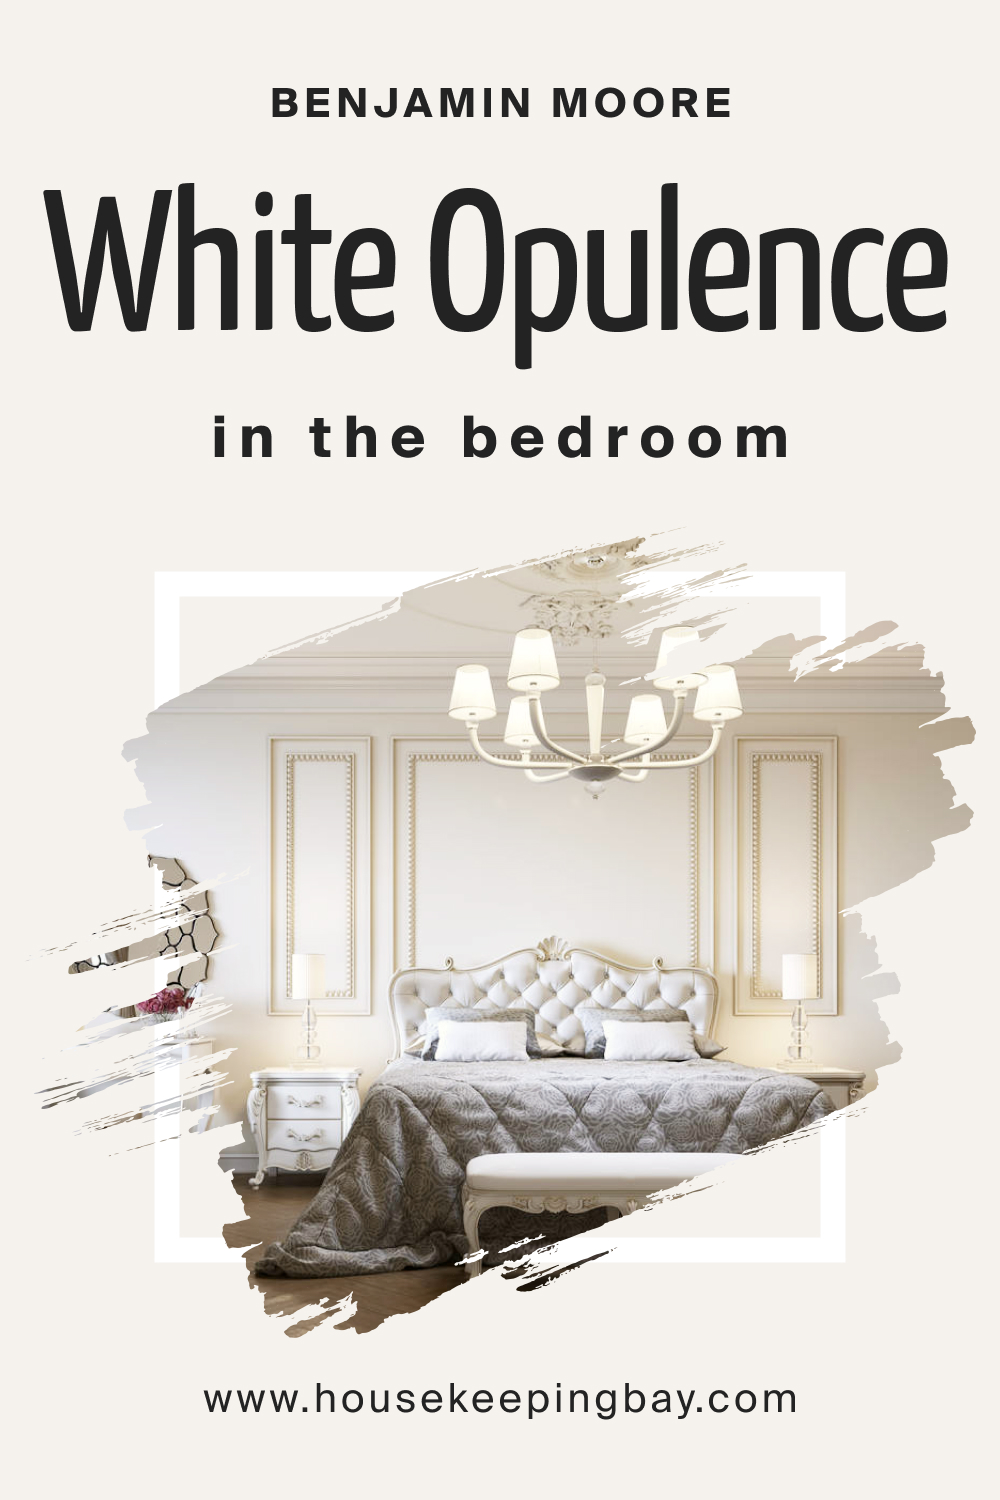 Benjamin Moore. White Opulence OC 69 for the Bedroom